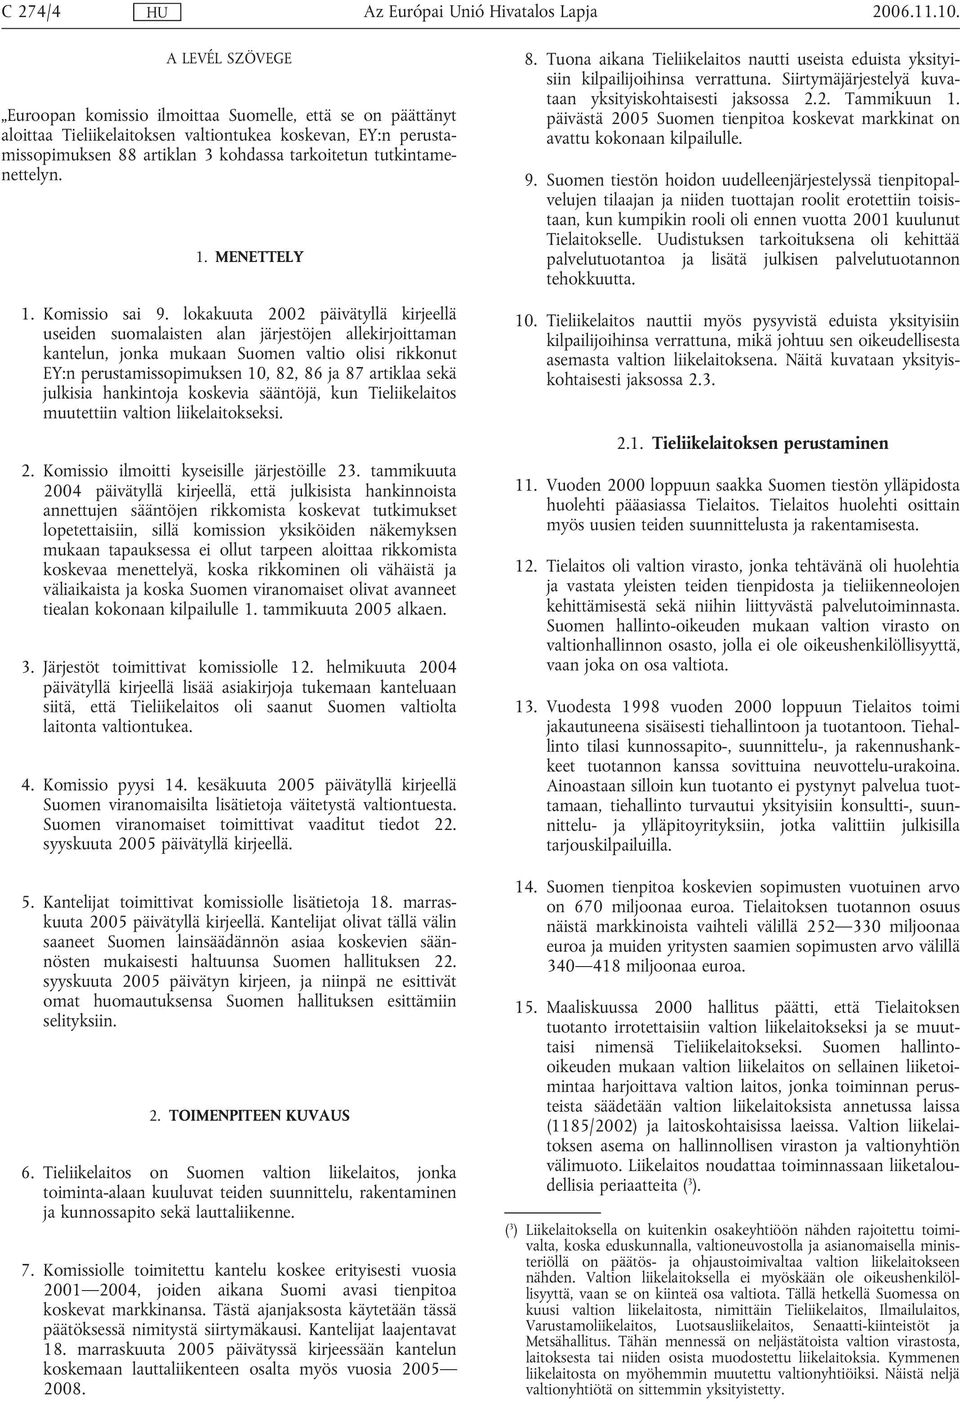 lokakuuta 2002 päivätyllä kirjeellä useiden suomalaisten alan järjestöjen allekirjoittaman kantelun, jonka mukaan Suomen valtio olisi rikkonut EY:n perustamissopimuksen 10, 82, 86 ja 87 artiklaa sekä